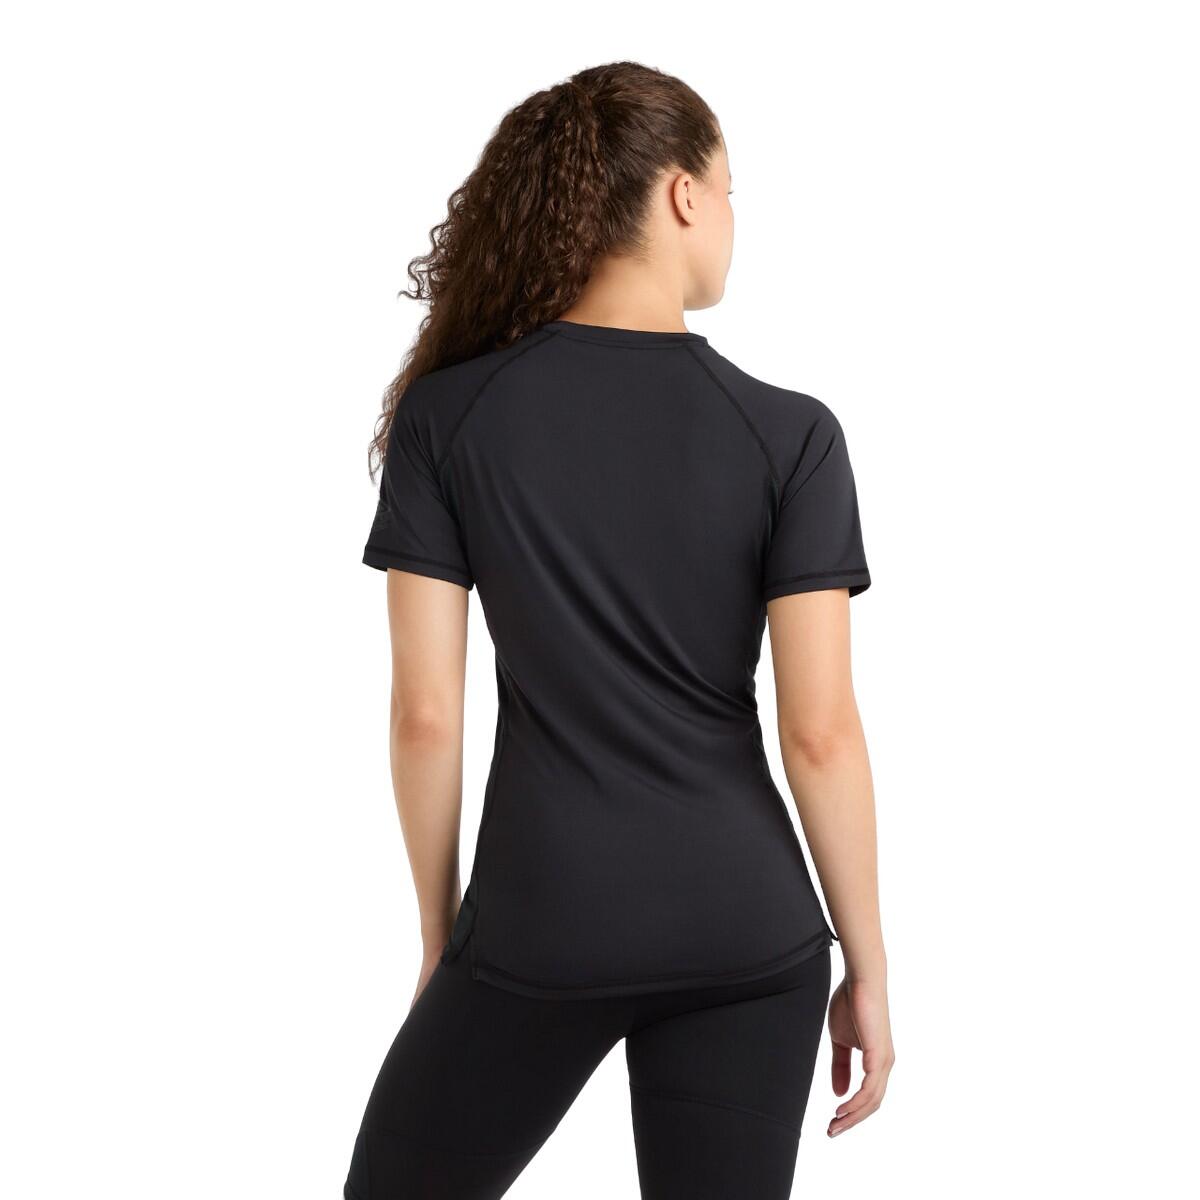 Womens/Ladies Pro Training Polyester TShirt (Black) 2/4